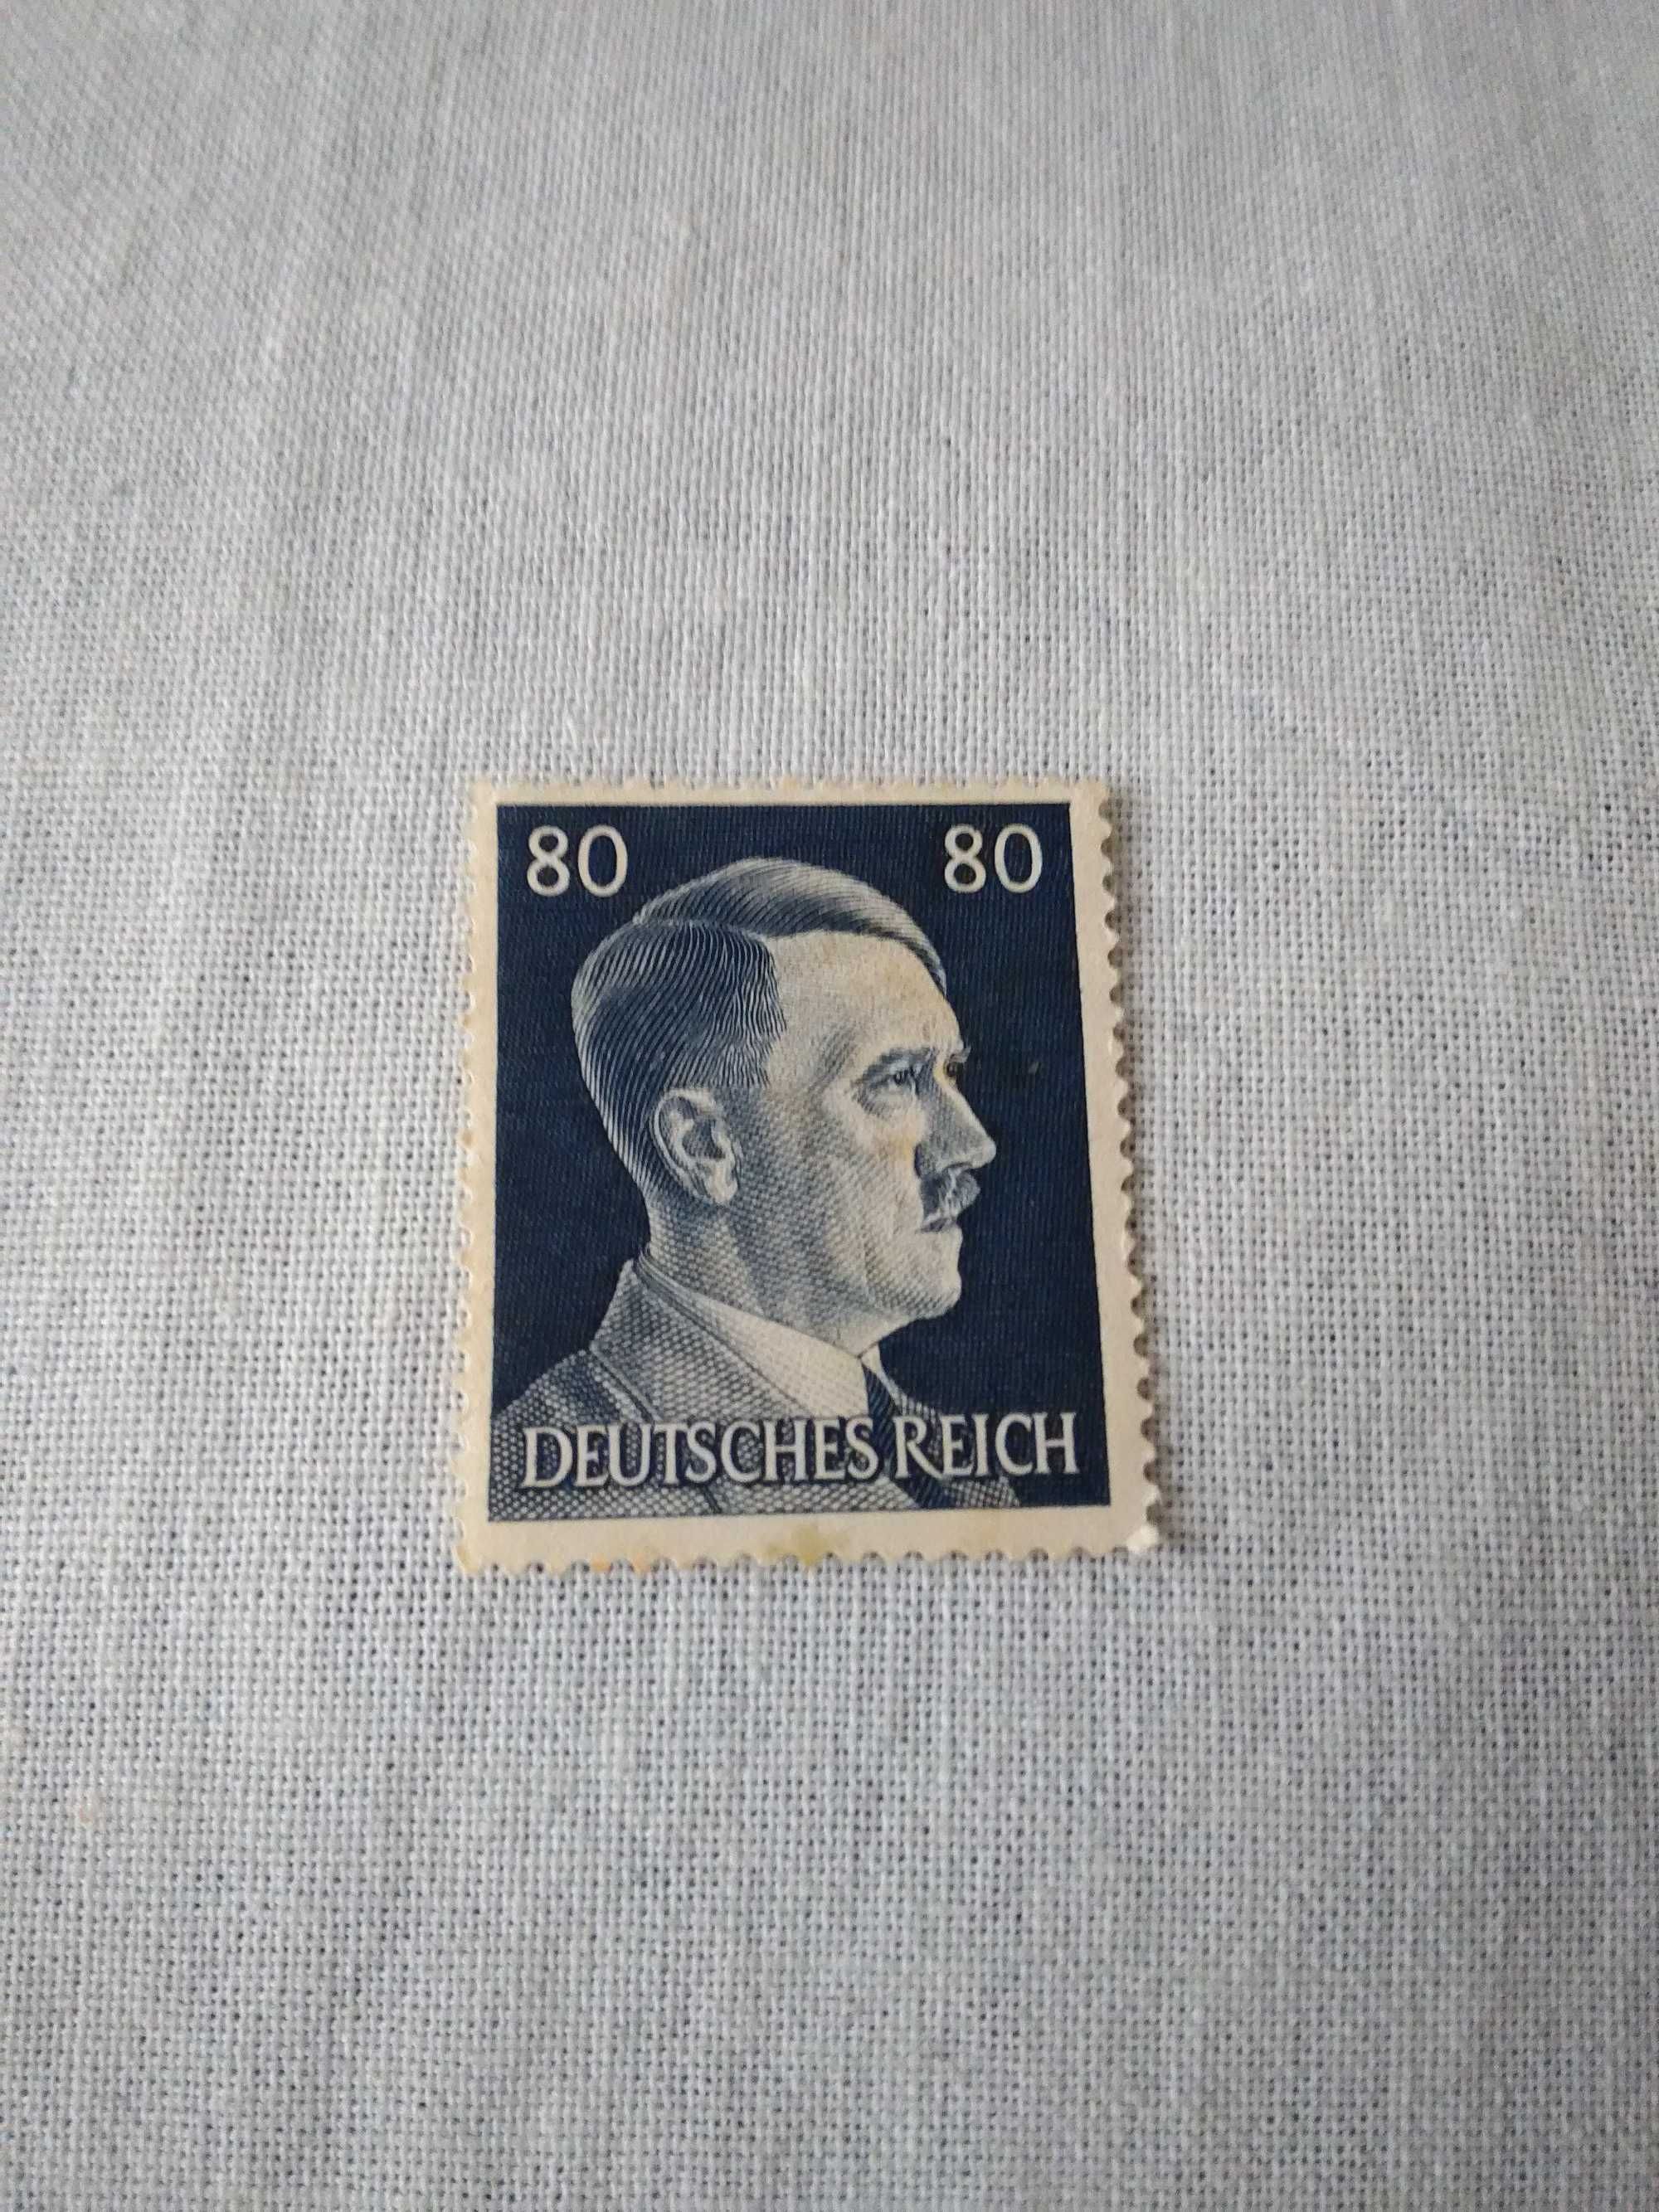 Німецька поштова марка часів третього райху, негашена